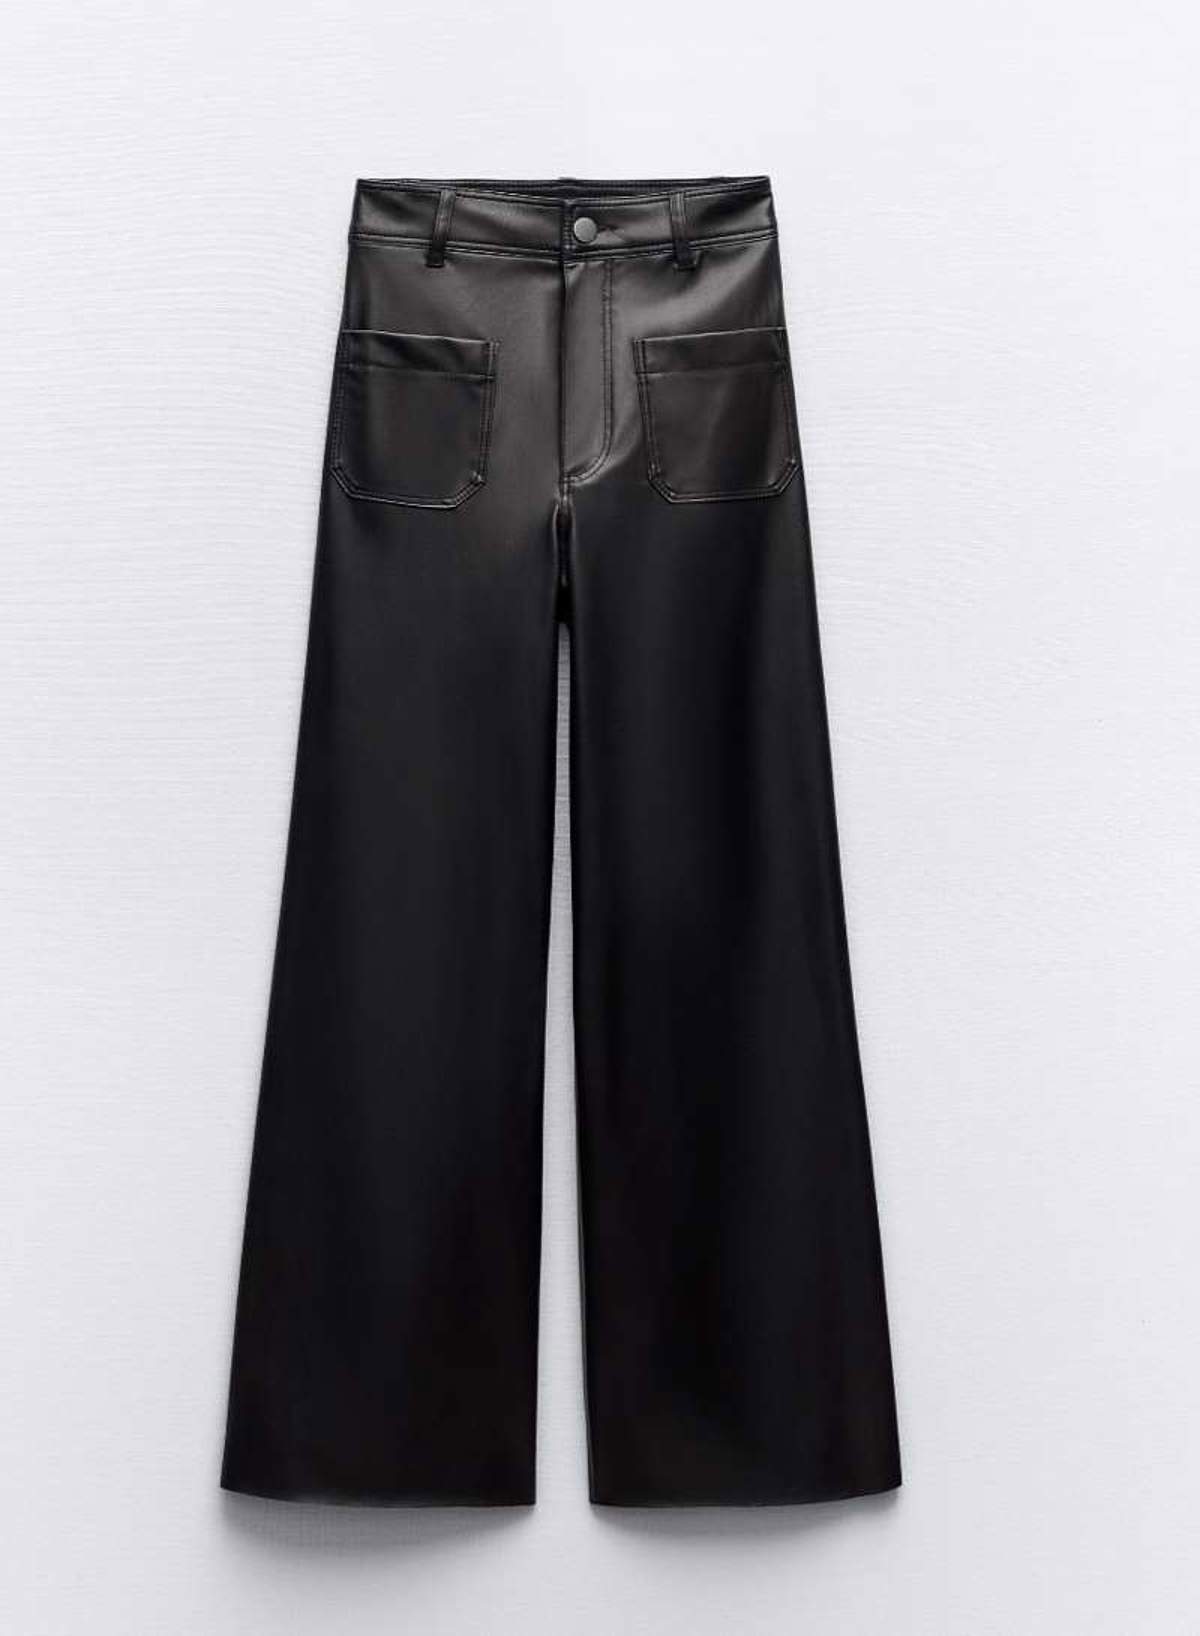 10 pantalones de tiro alto de Zara que tienen efecto vientre plano